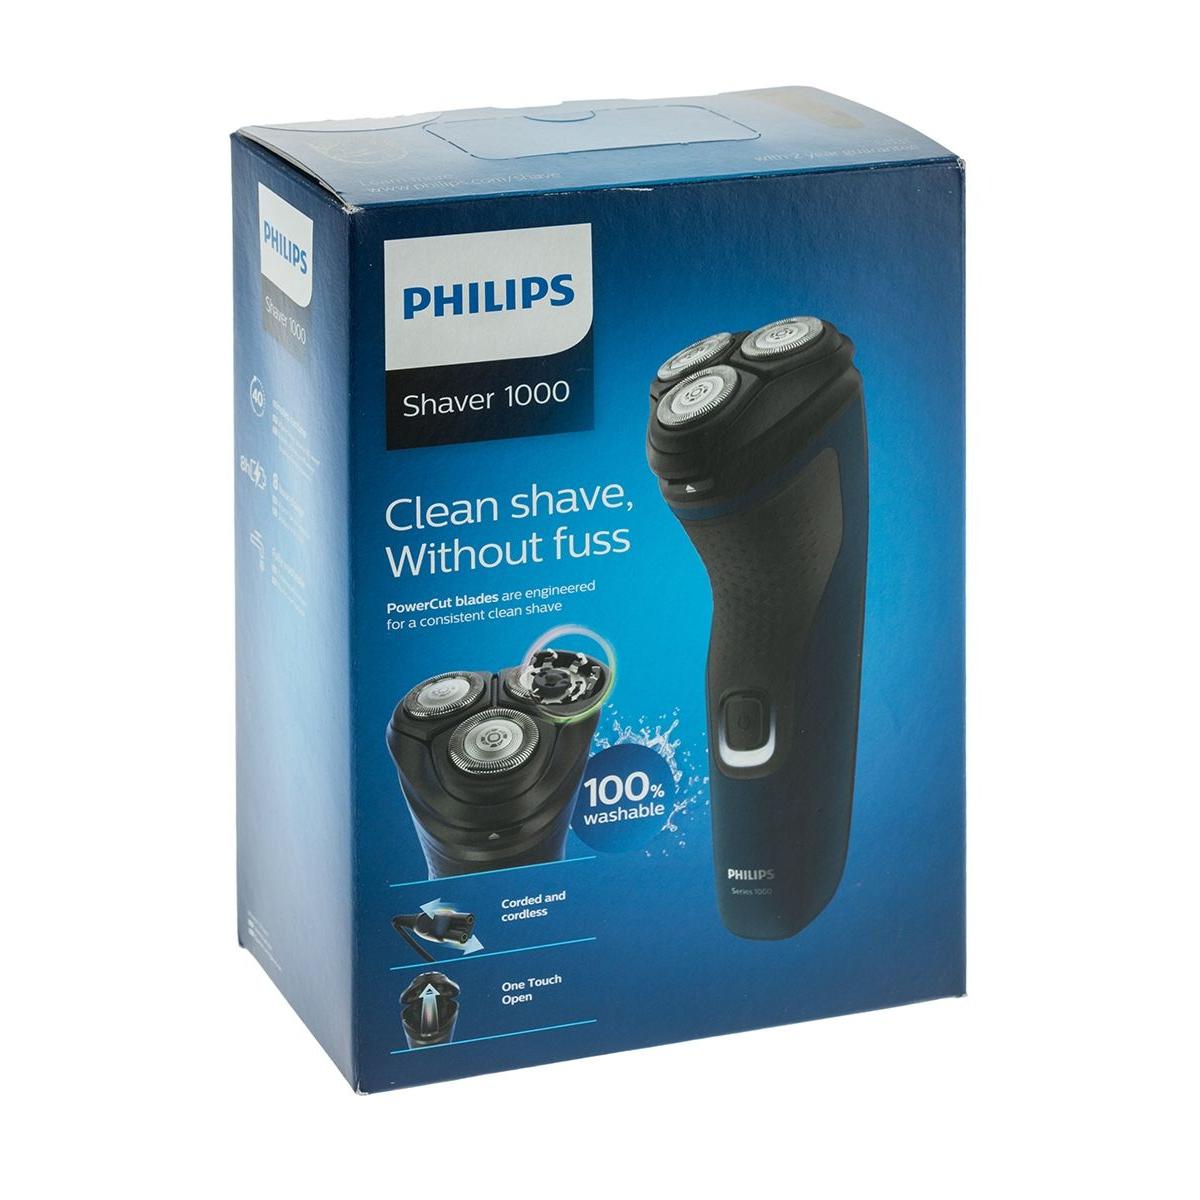 Philips s1131/41. Электробритва Philips s1131/41 черный. Бритва роторная Philips s1520/04 черный/серый. Электробритва Homestar HS-9012 отзывы. Филипс вращающаяся